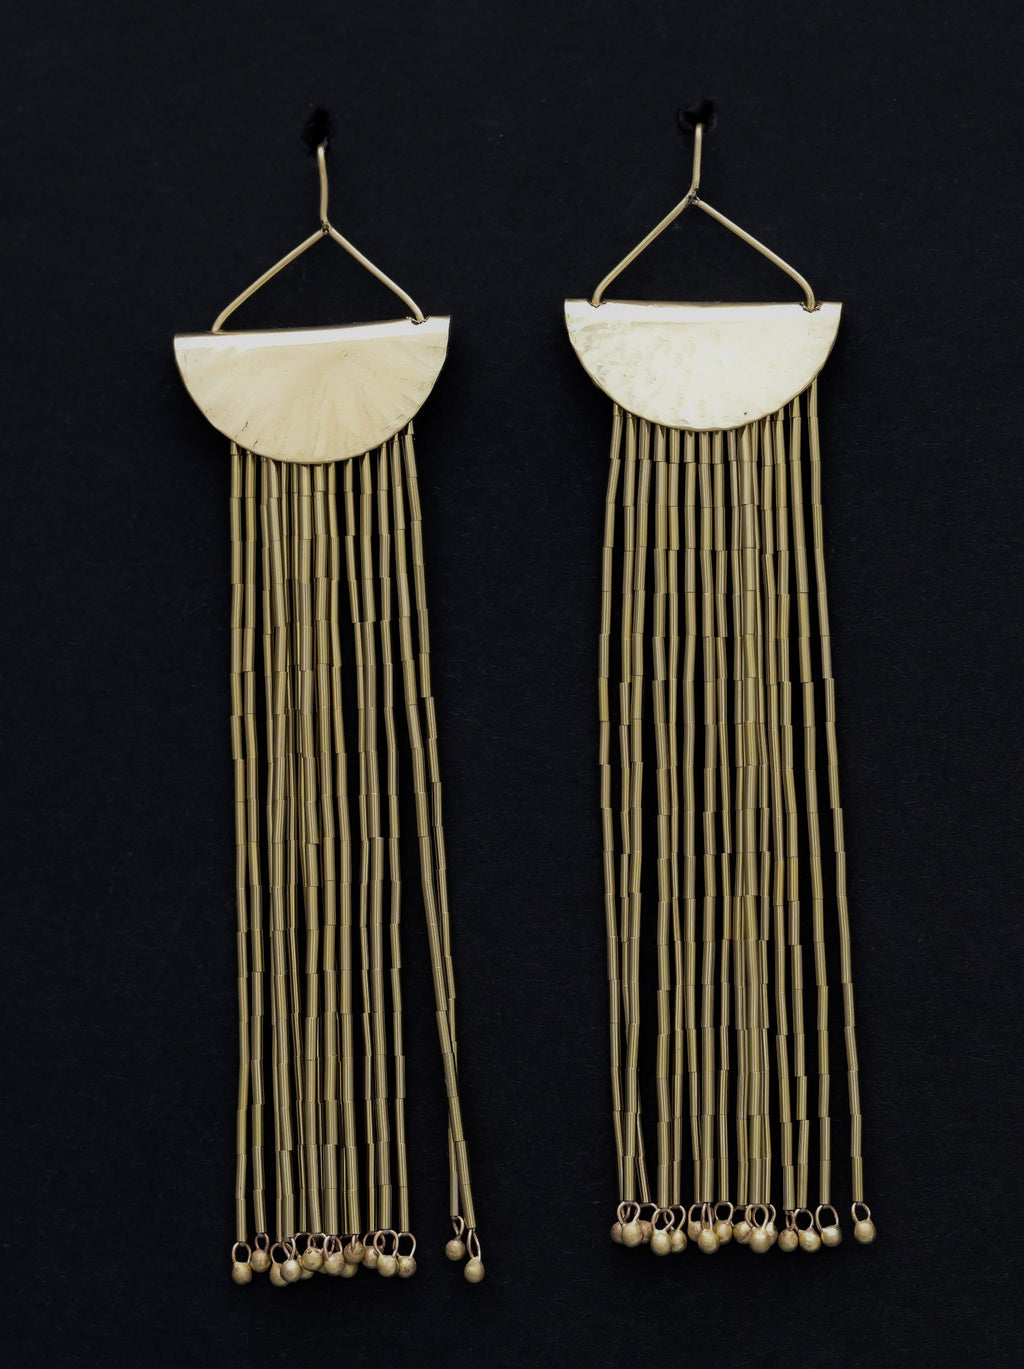 Quarter Moon earrings in Gold earrings Shrine Jewelry